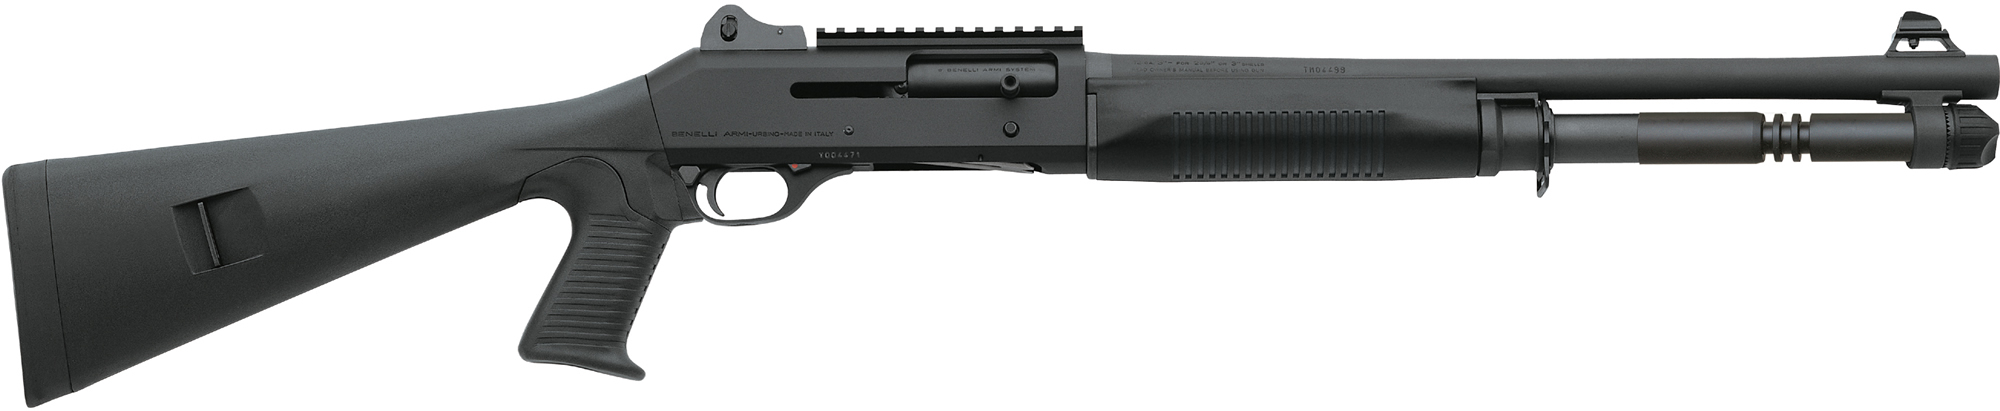 Benelli M4 Tactical Shotgun 11707, 12 Gauge, 18.5